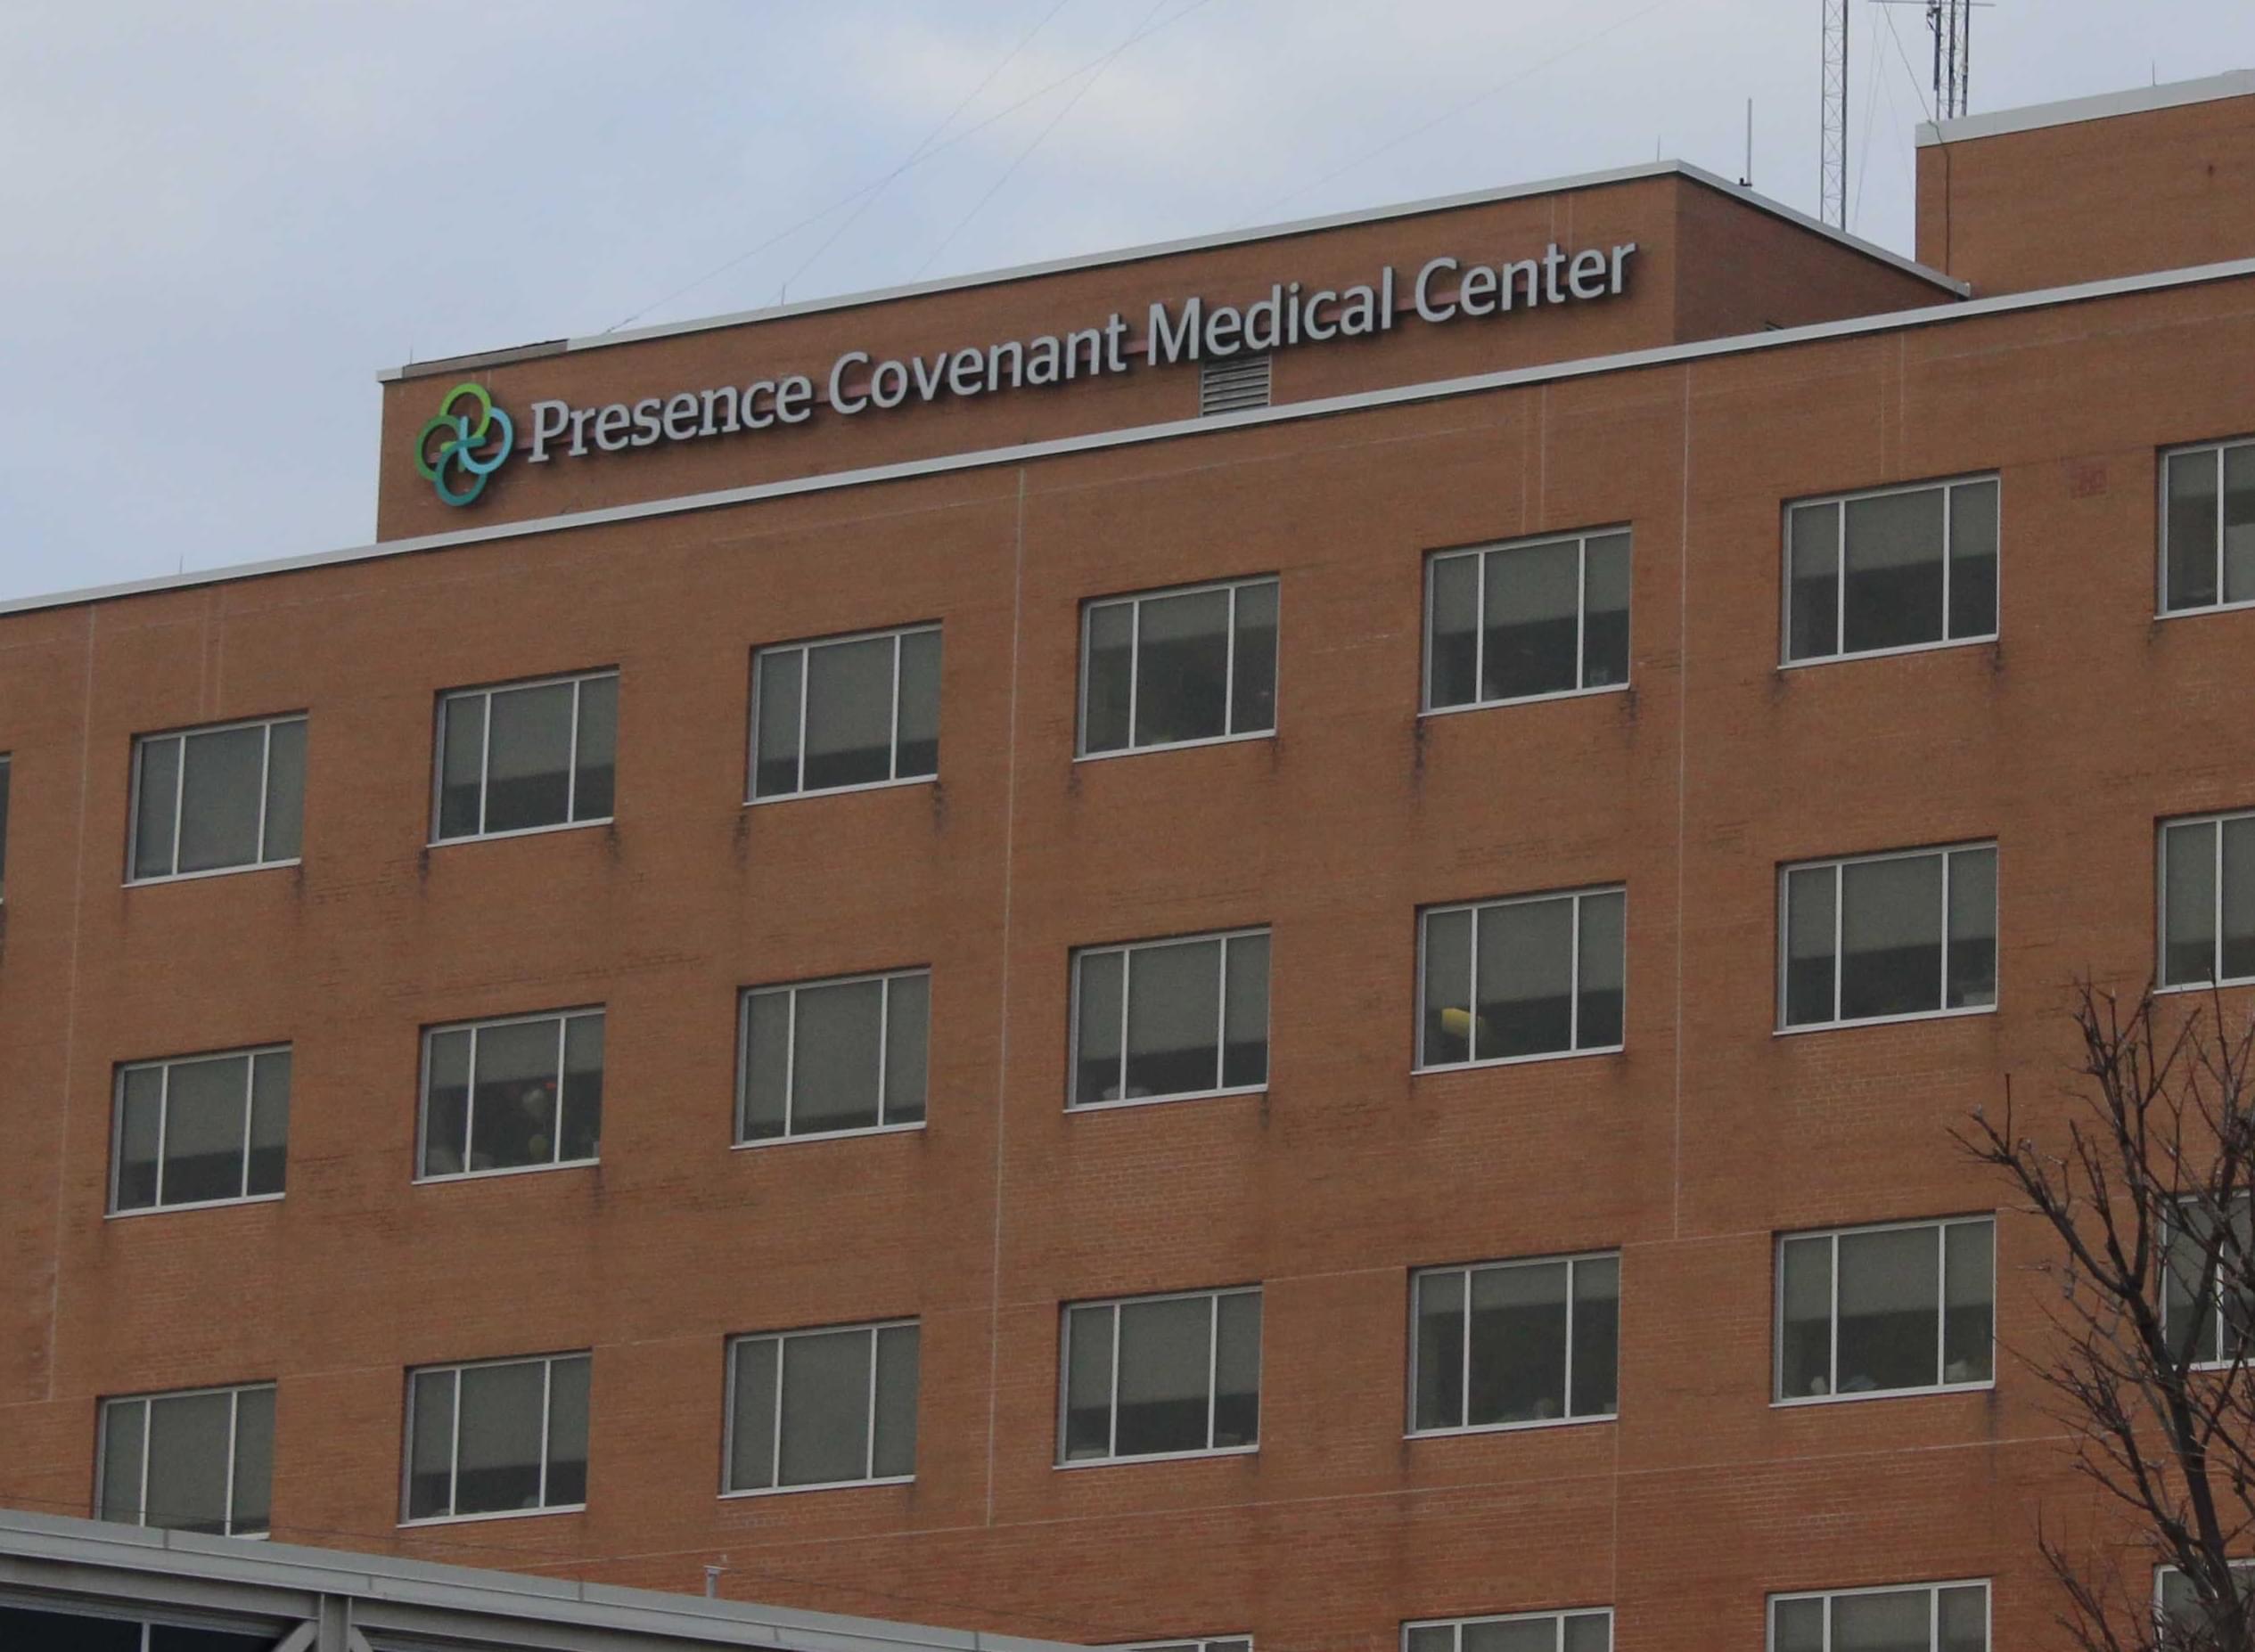 Presence Covenant Medical Center in Urbana